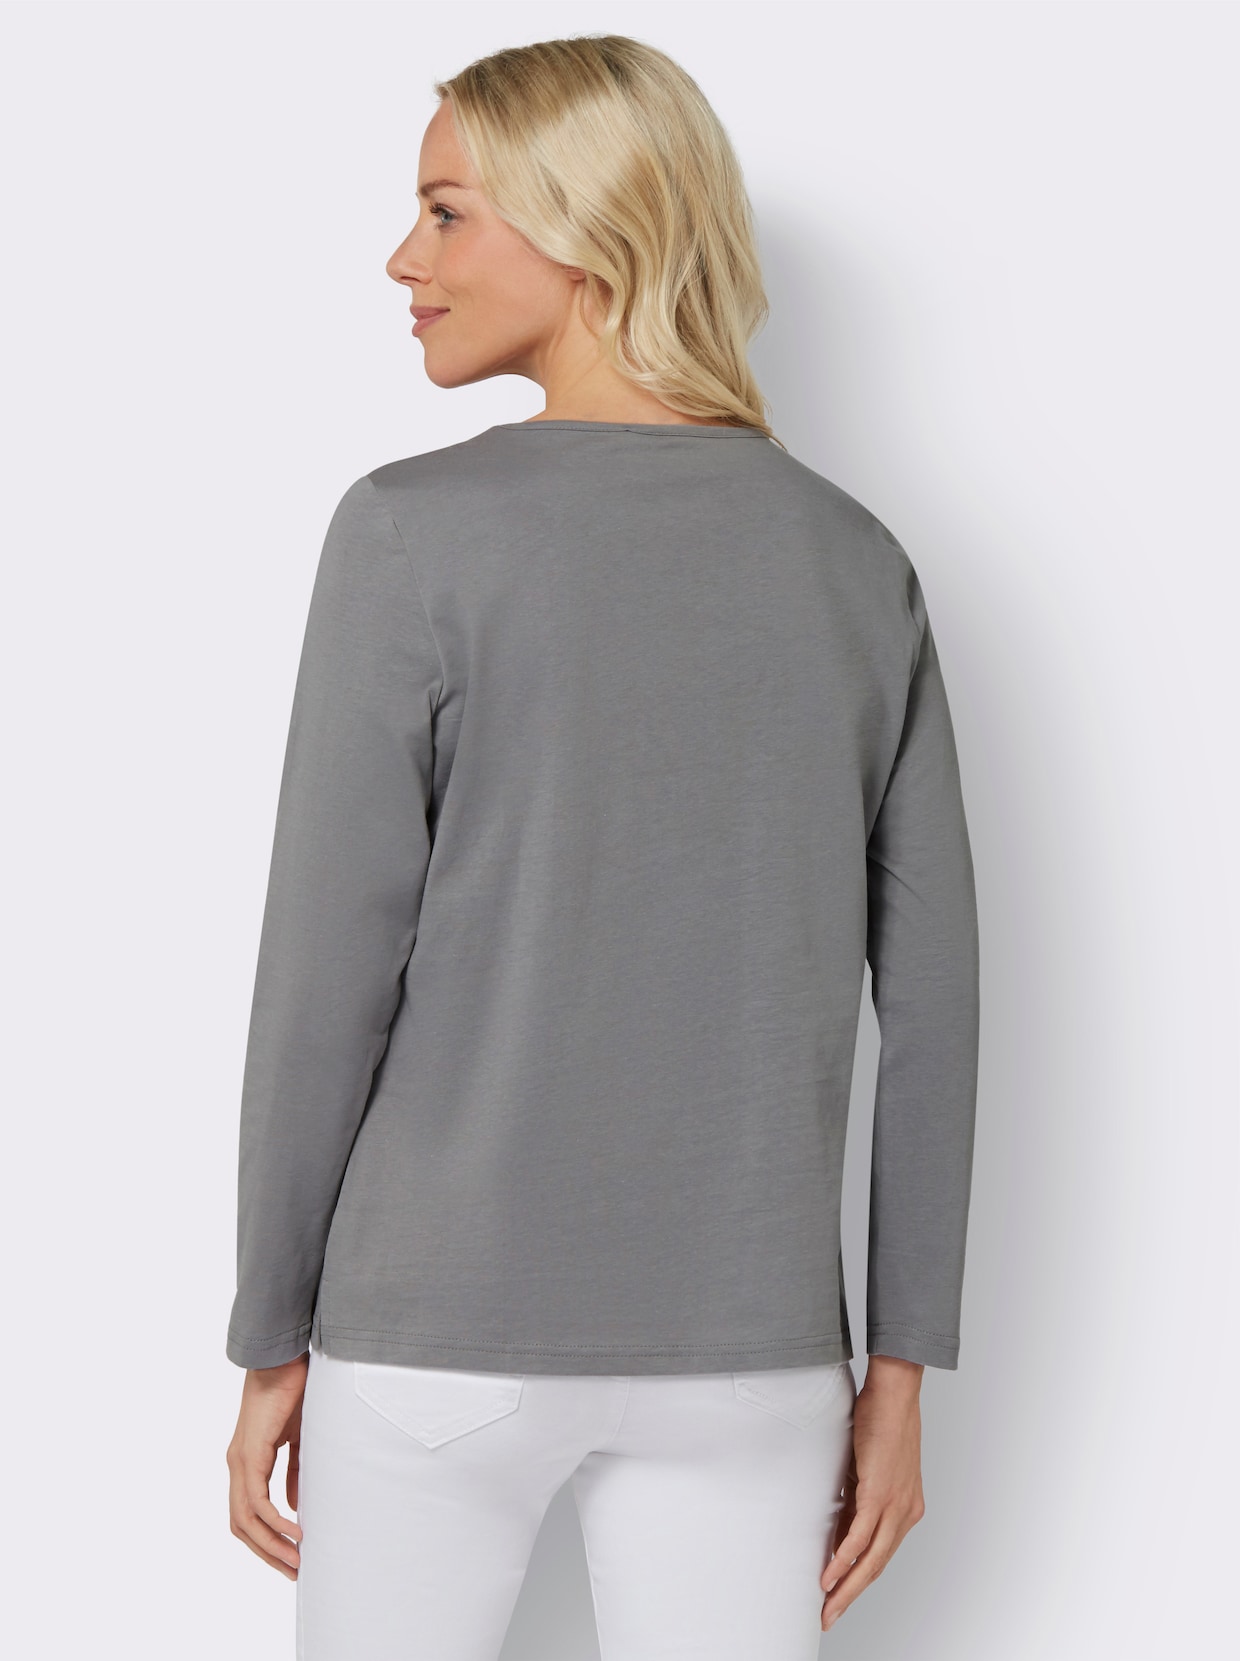 Tričko s dlouhým rukávem - kamenná šedá-vzor